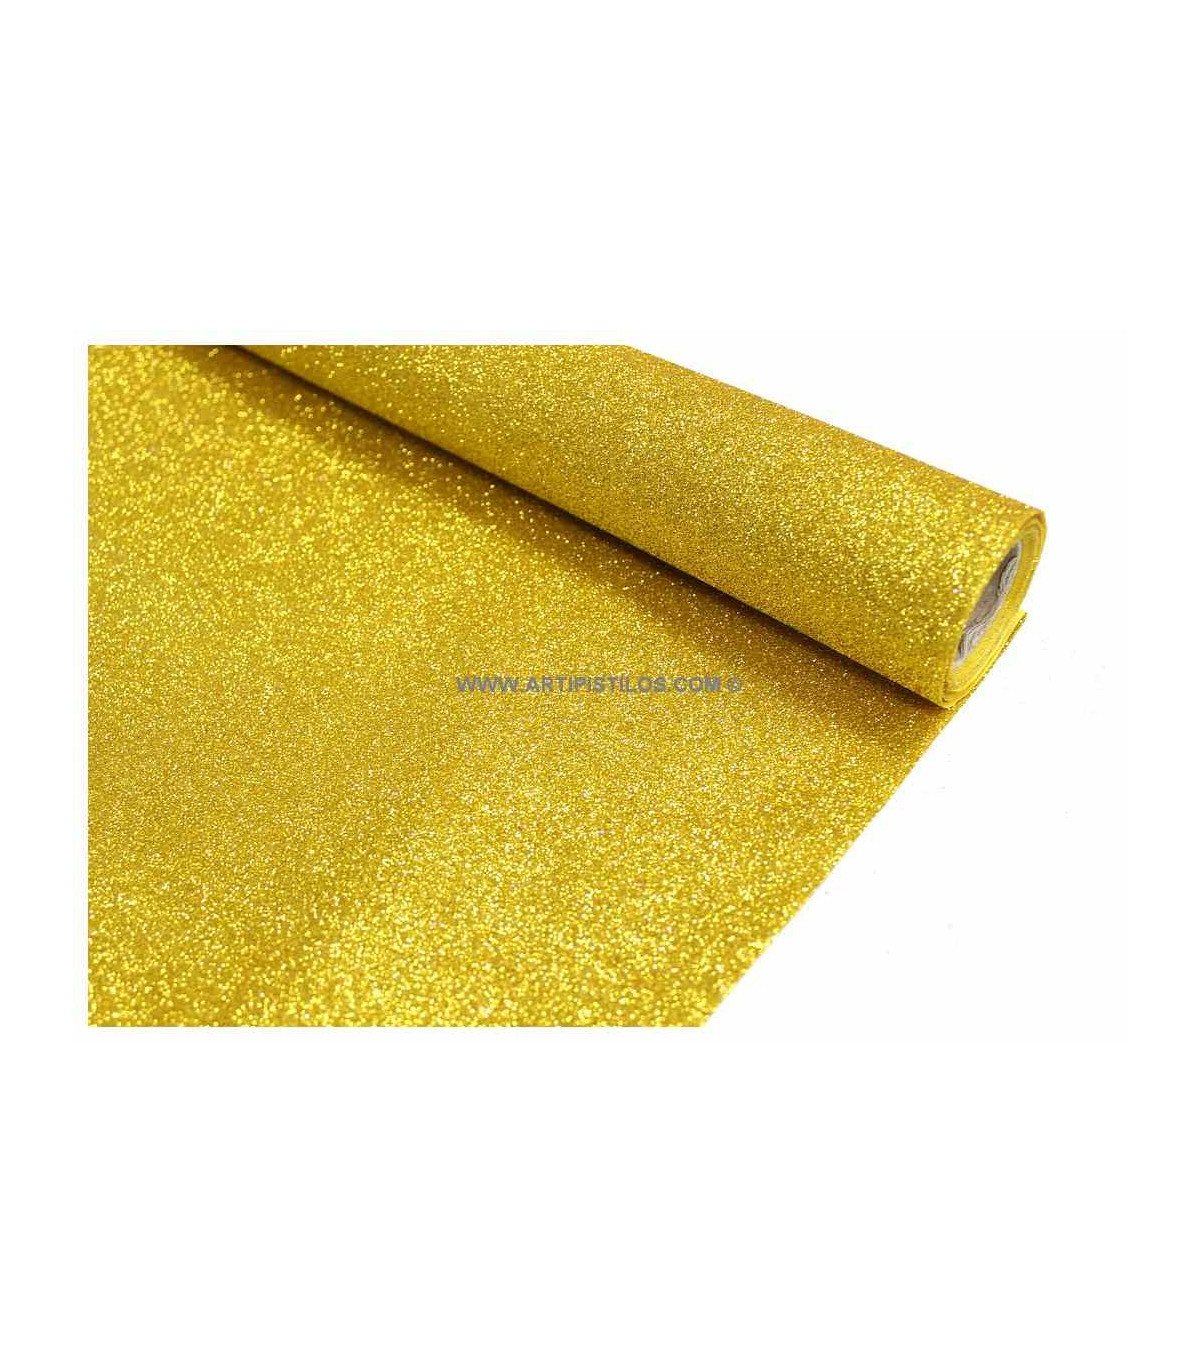 New Creations Fabric & Foam Inc, Tela de punto de lentejuelas con confeti  sintético de 44/45 pulgadas de ancho, punto brillante (amarillo claro, 1